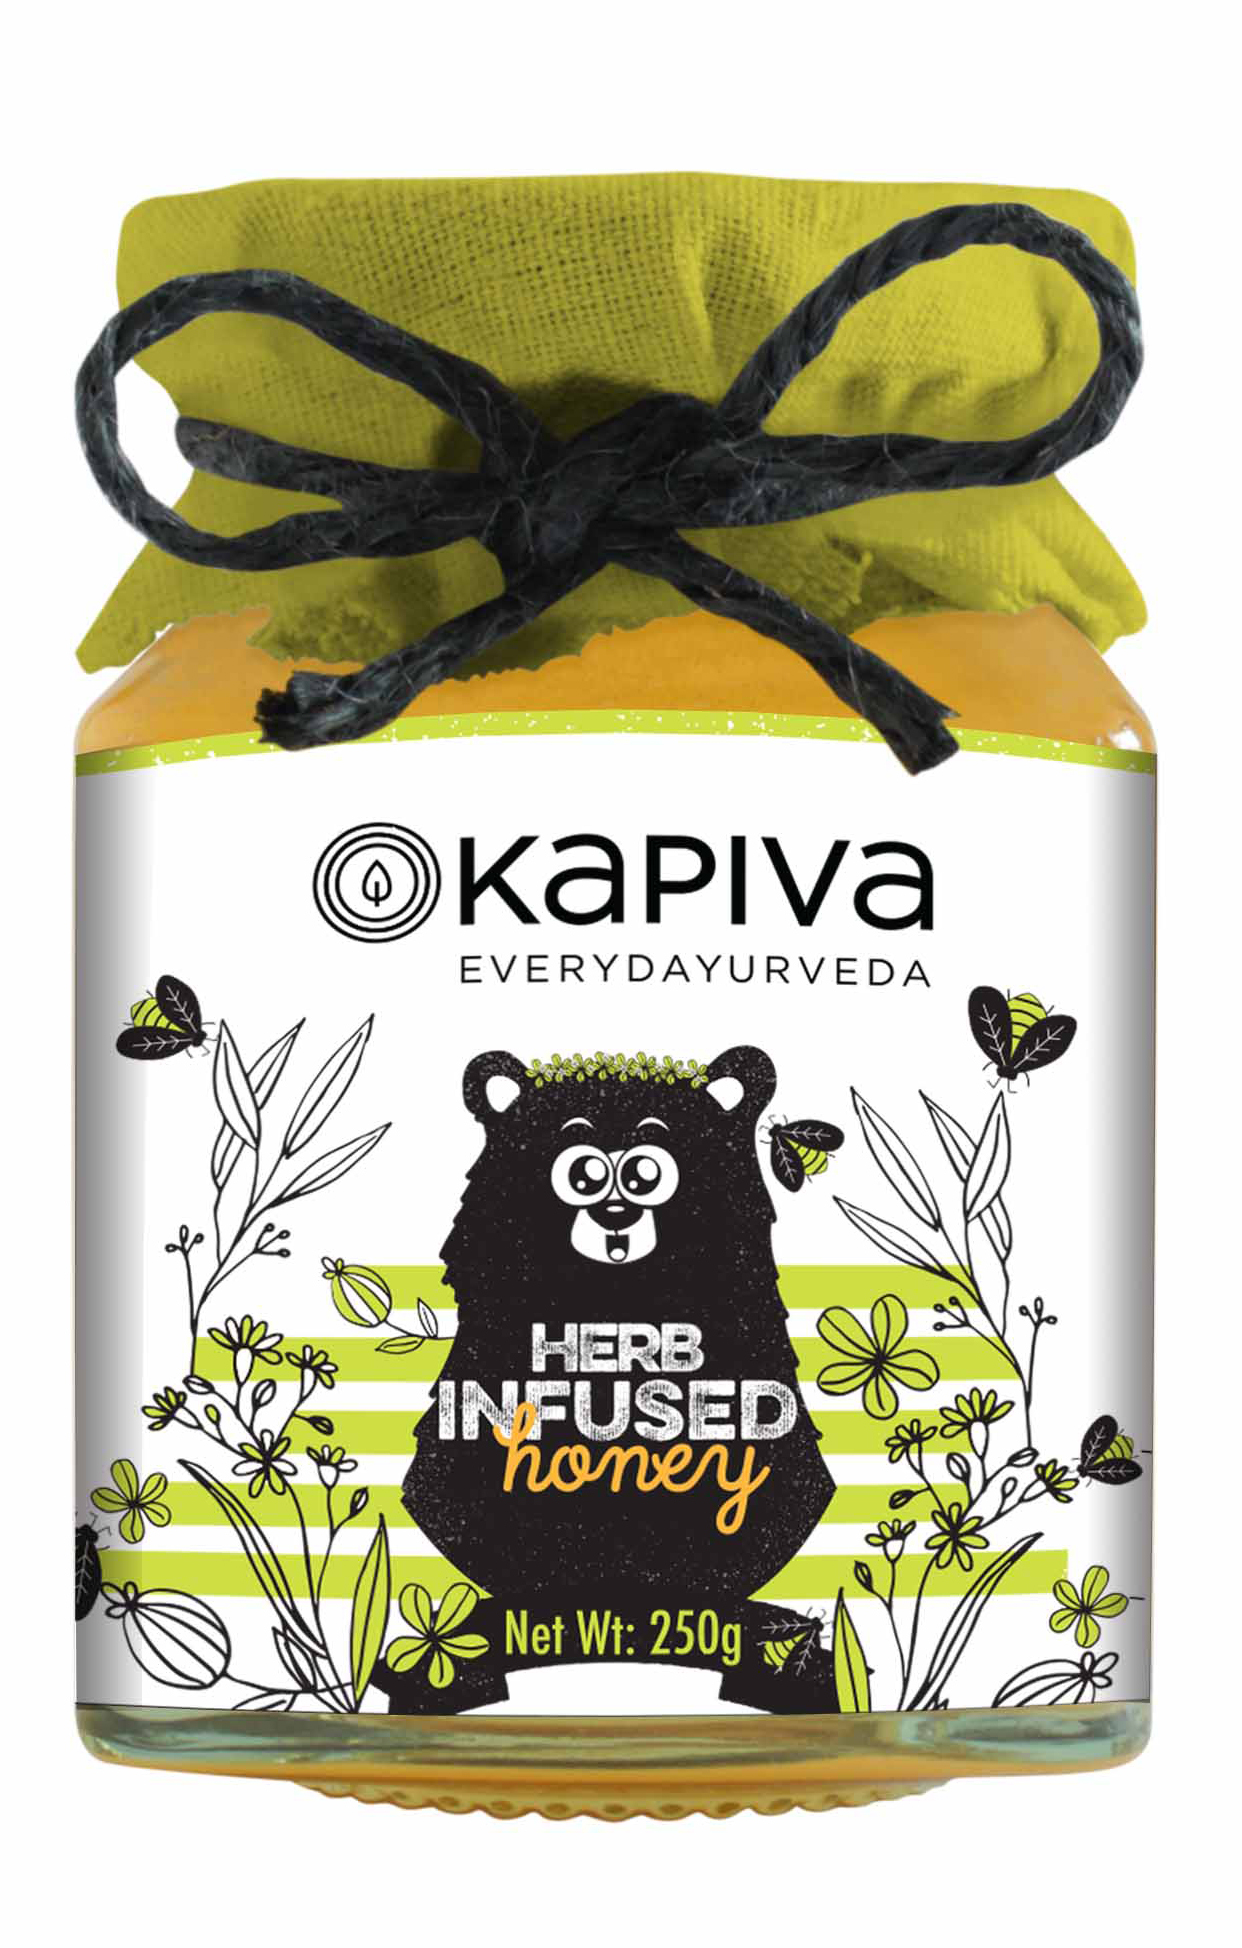 Buy Kapiva Herb Infused Honey at Best Price Online